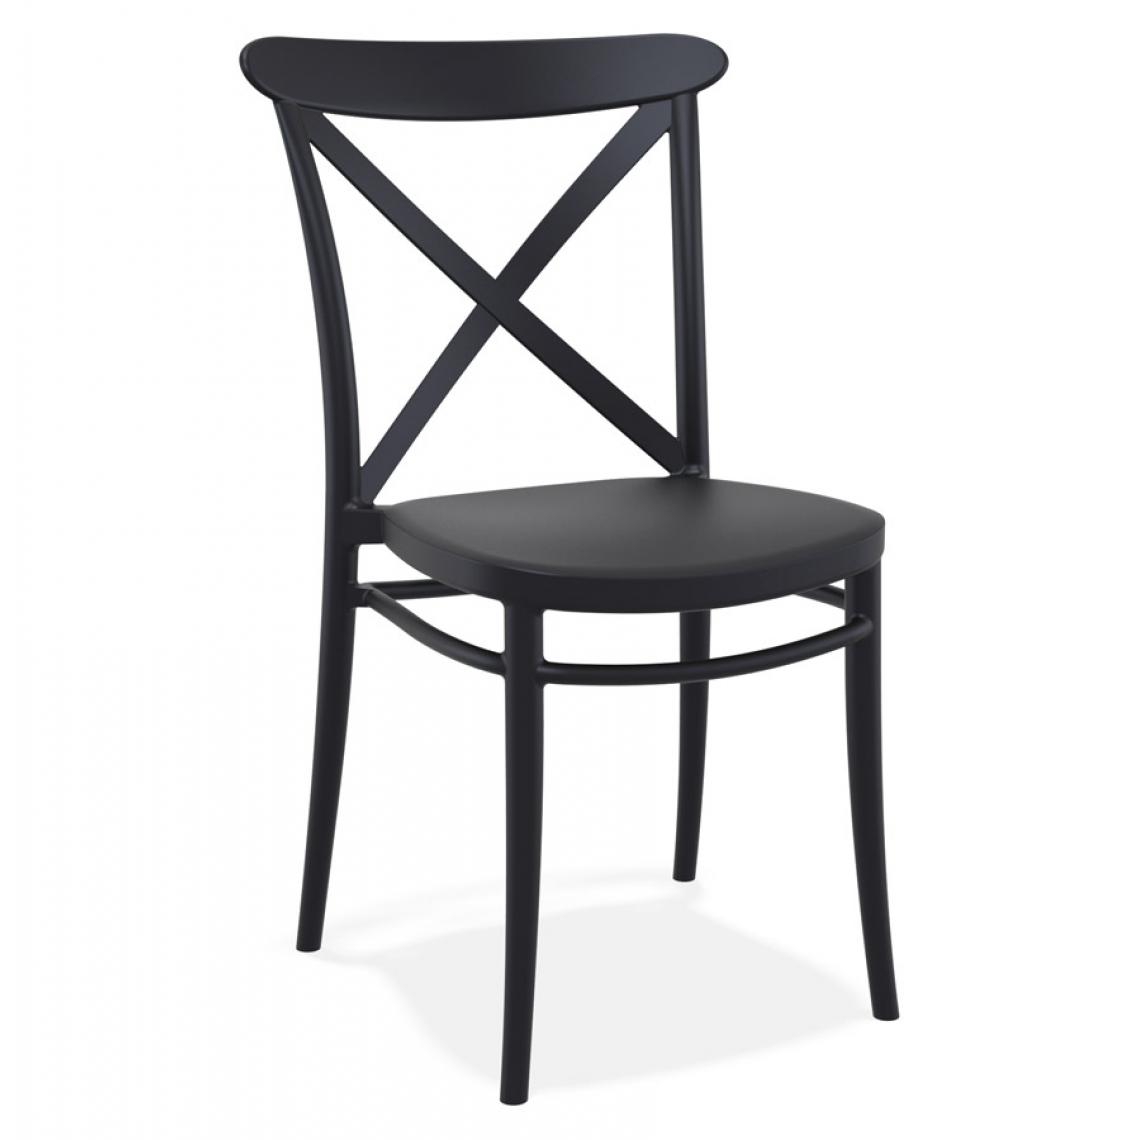 Alterego - Chaise empilable 'JACOB' style rétro en matière plastique noire - Chaises